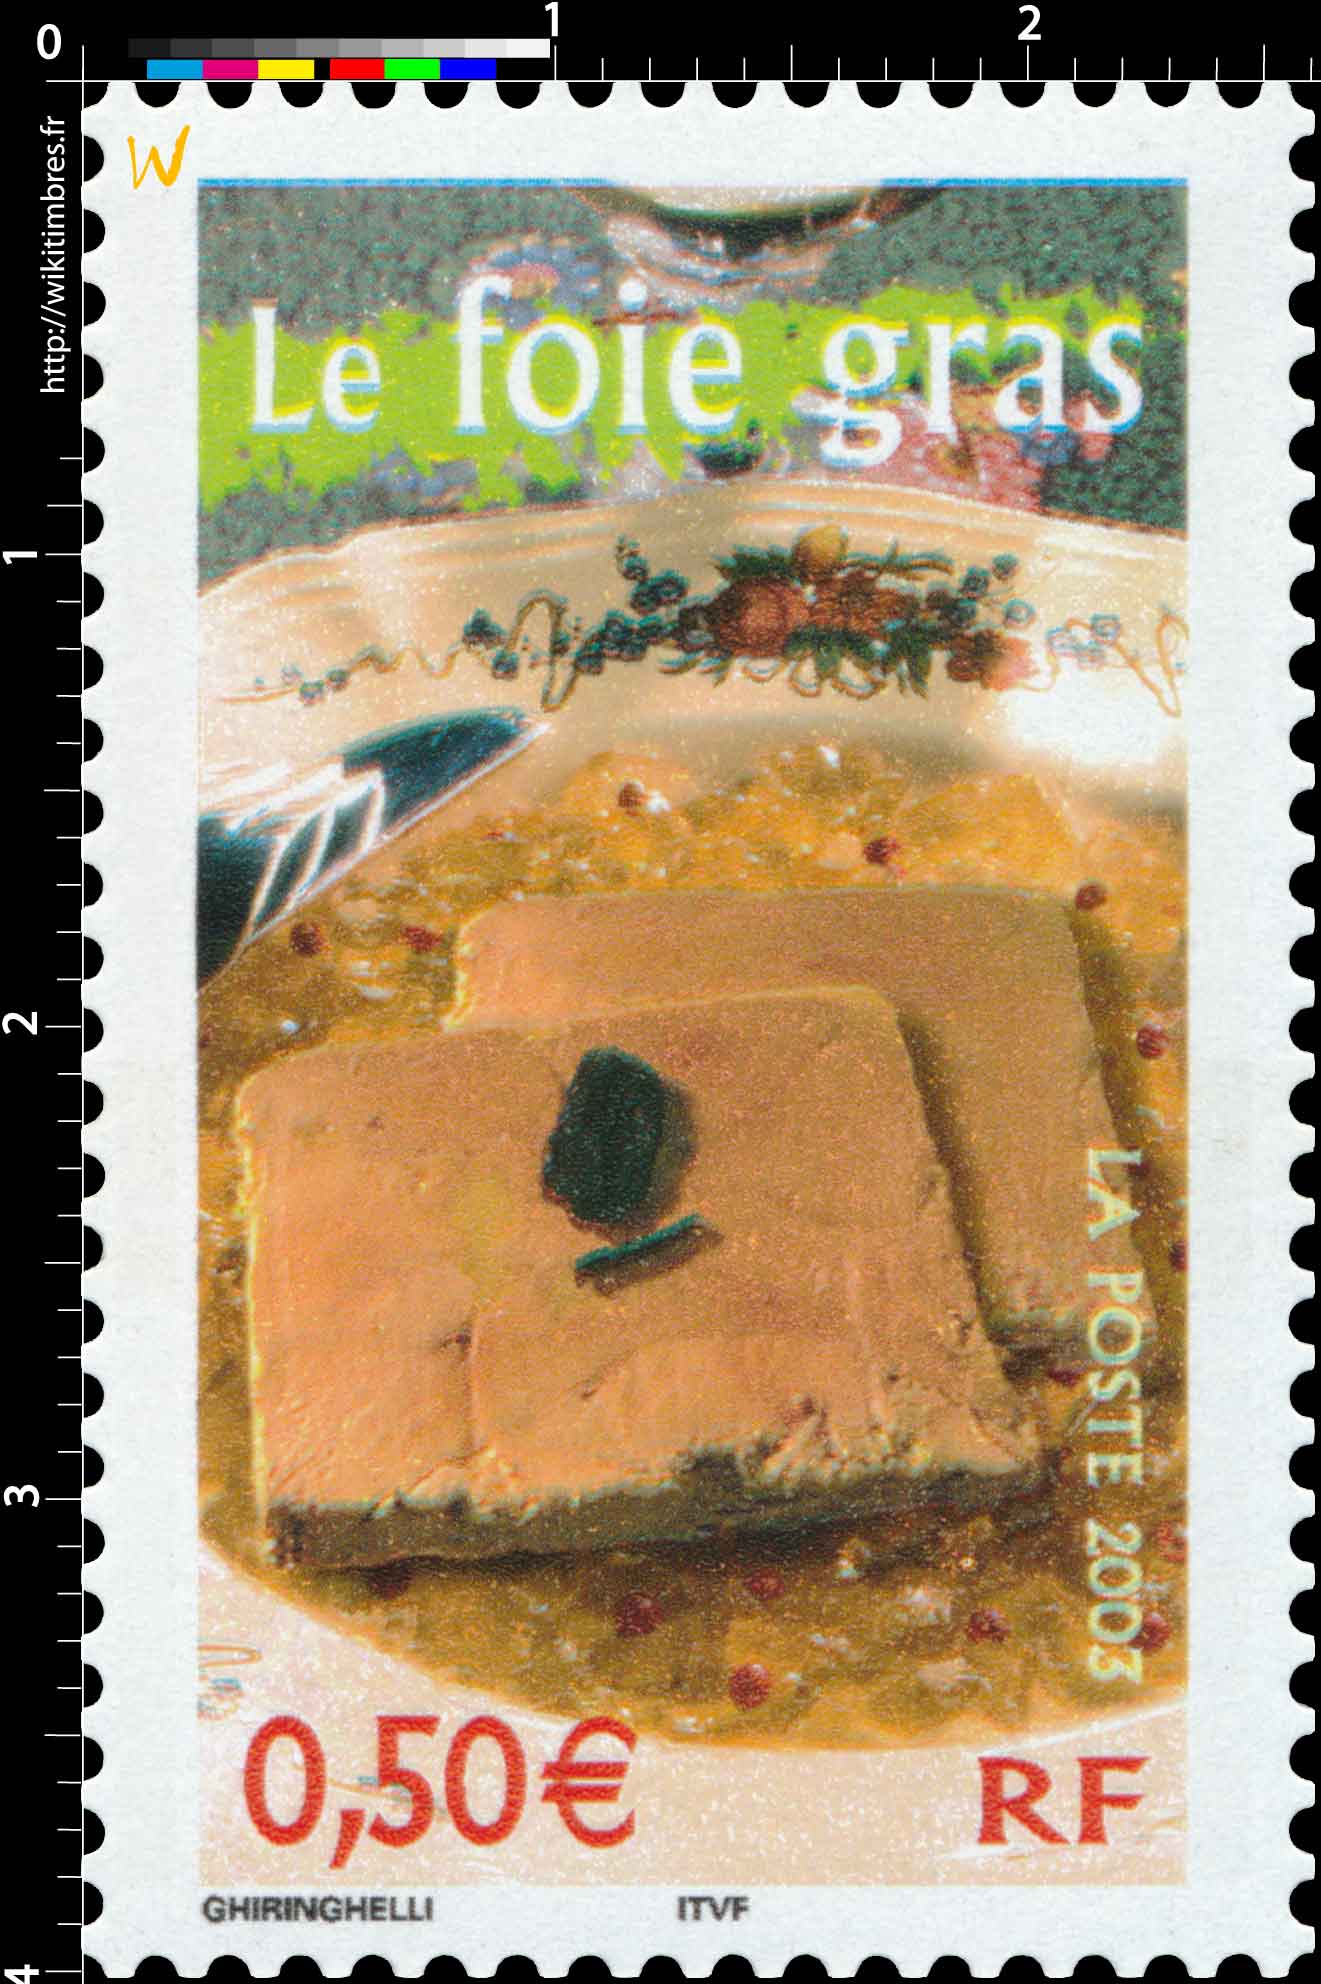 2003 Le fois gras